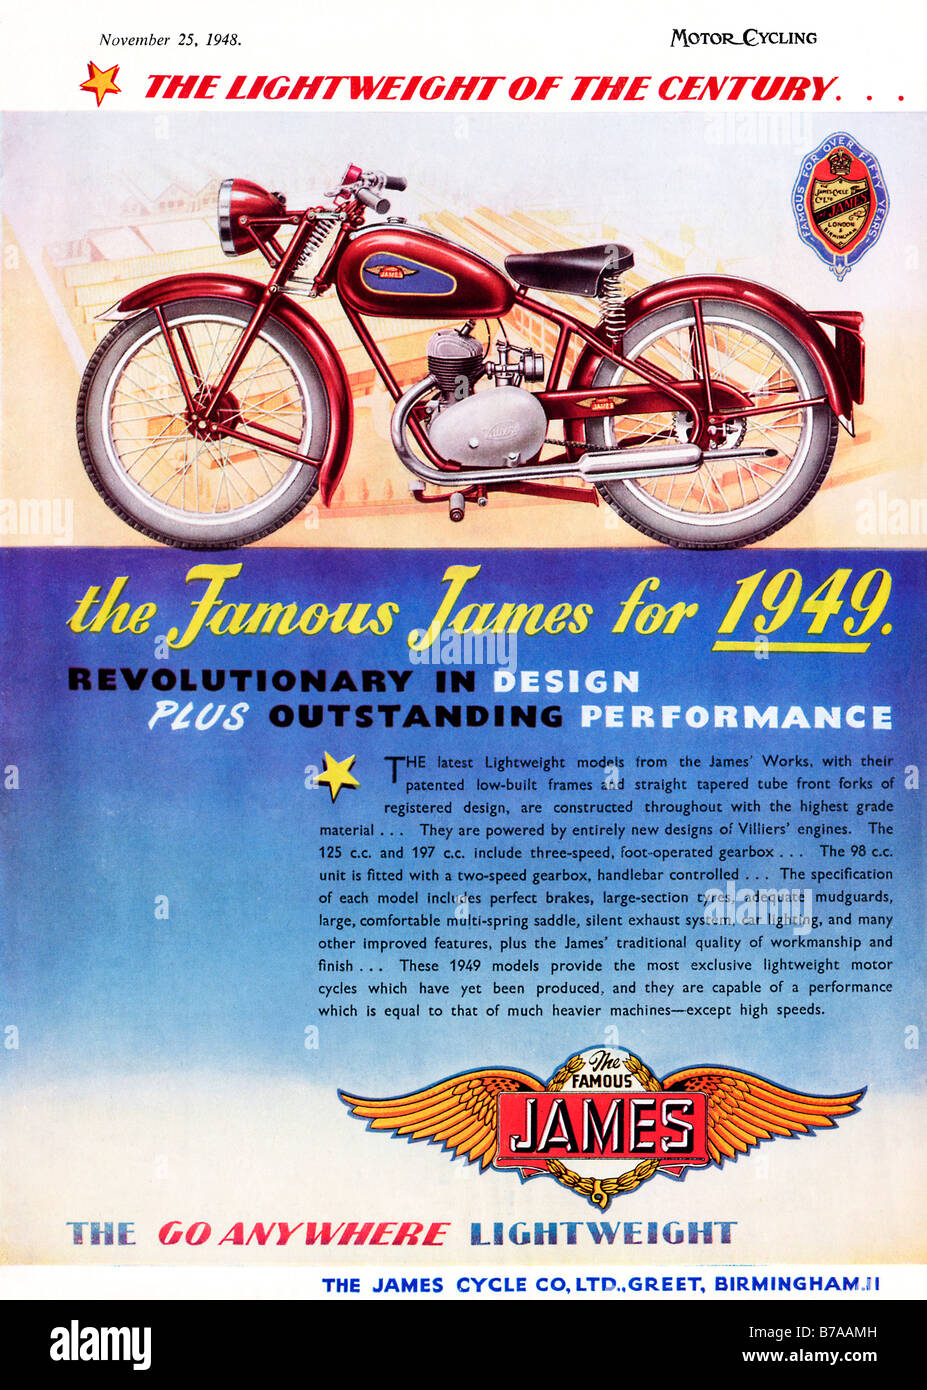 Il famoso James 1948 annuncio pubblicitario per i nuovi modelli 1949 dell'inglese motore leggero Cicli con motori Villiers Foto Stock